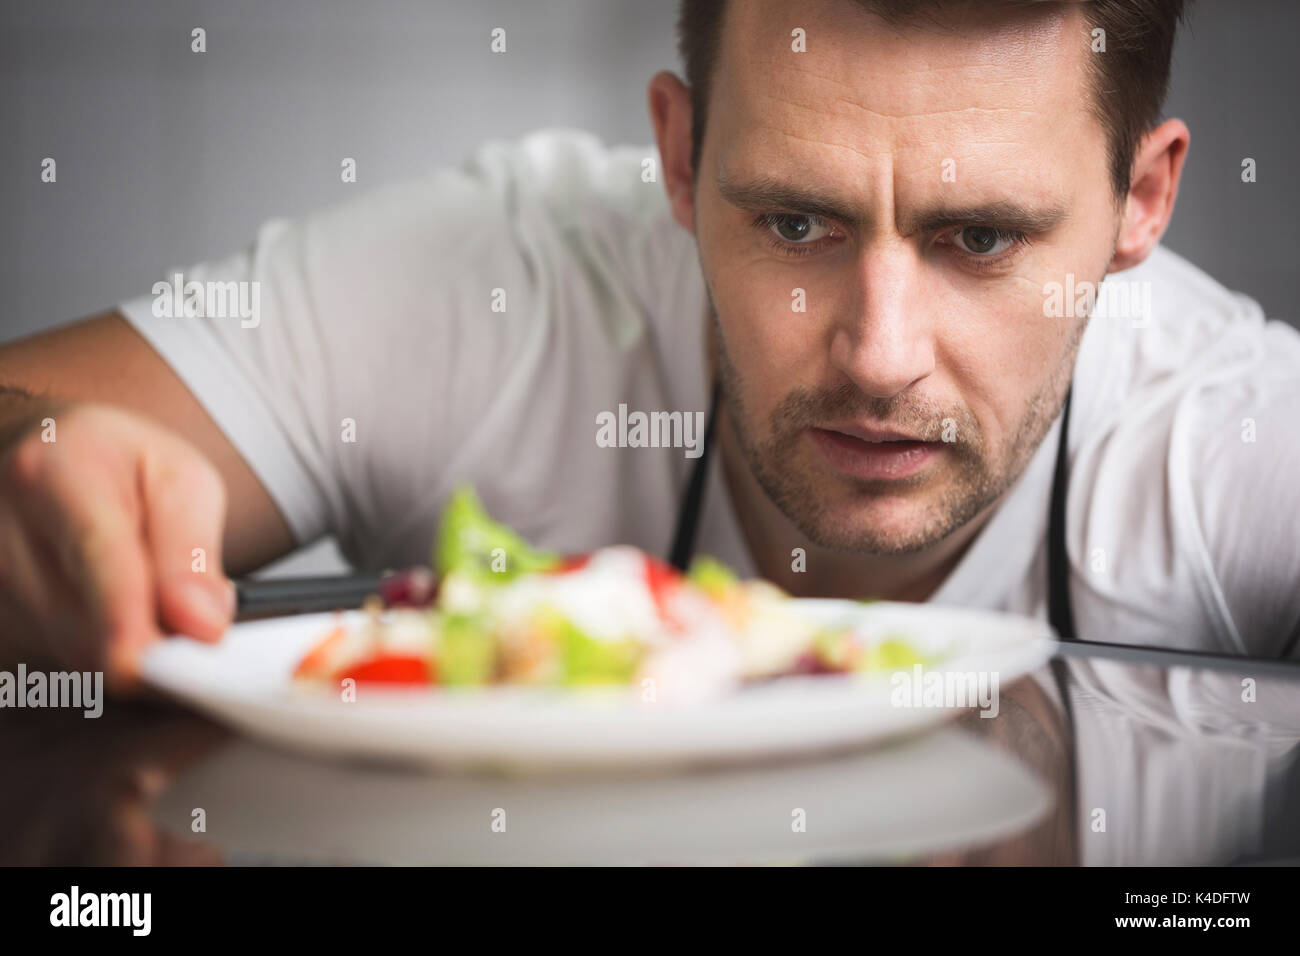 Close up portrait avant de male chef preparing salad Banque D'Images